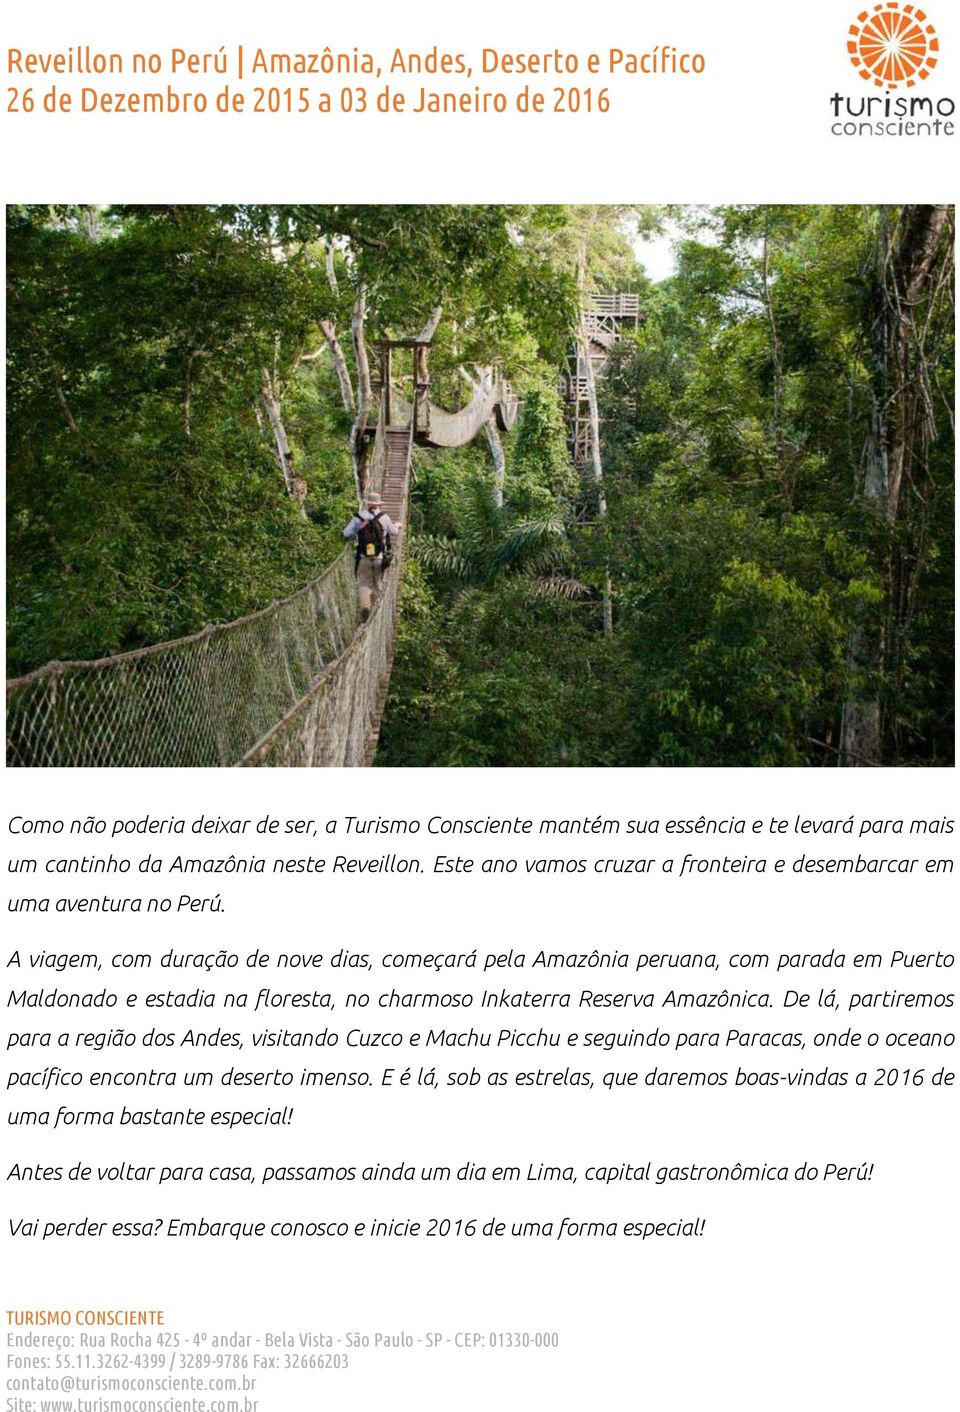 A viagem, com duração de nove dias, começará pela Amazônia peruana, com parada em Puerto Maldonado e estadia na floresta, no charmoso Inkaterra Reserva Amazônica.